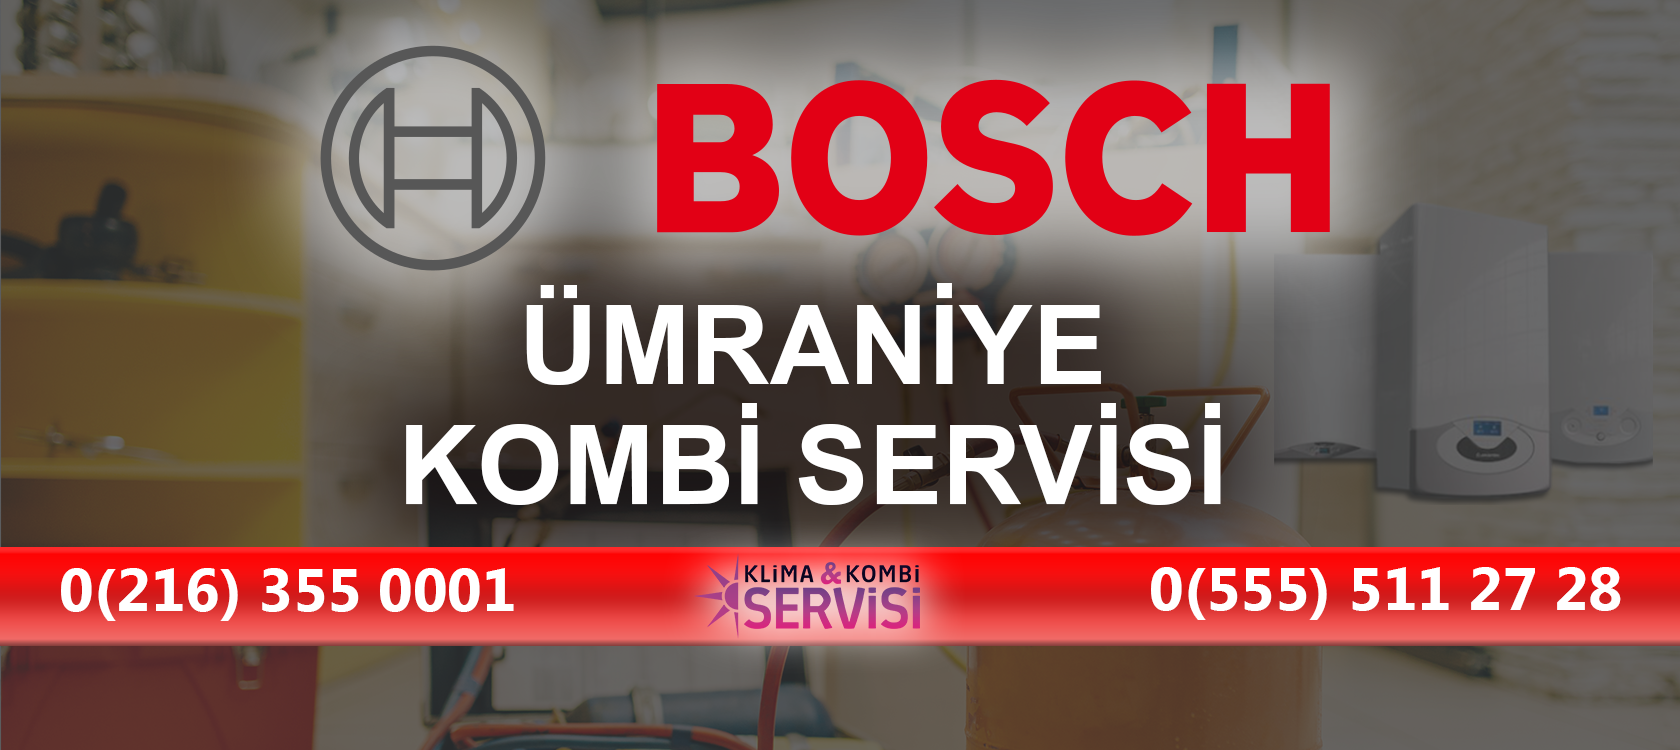 Umraniye Bosch Kombi Servisi